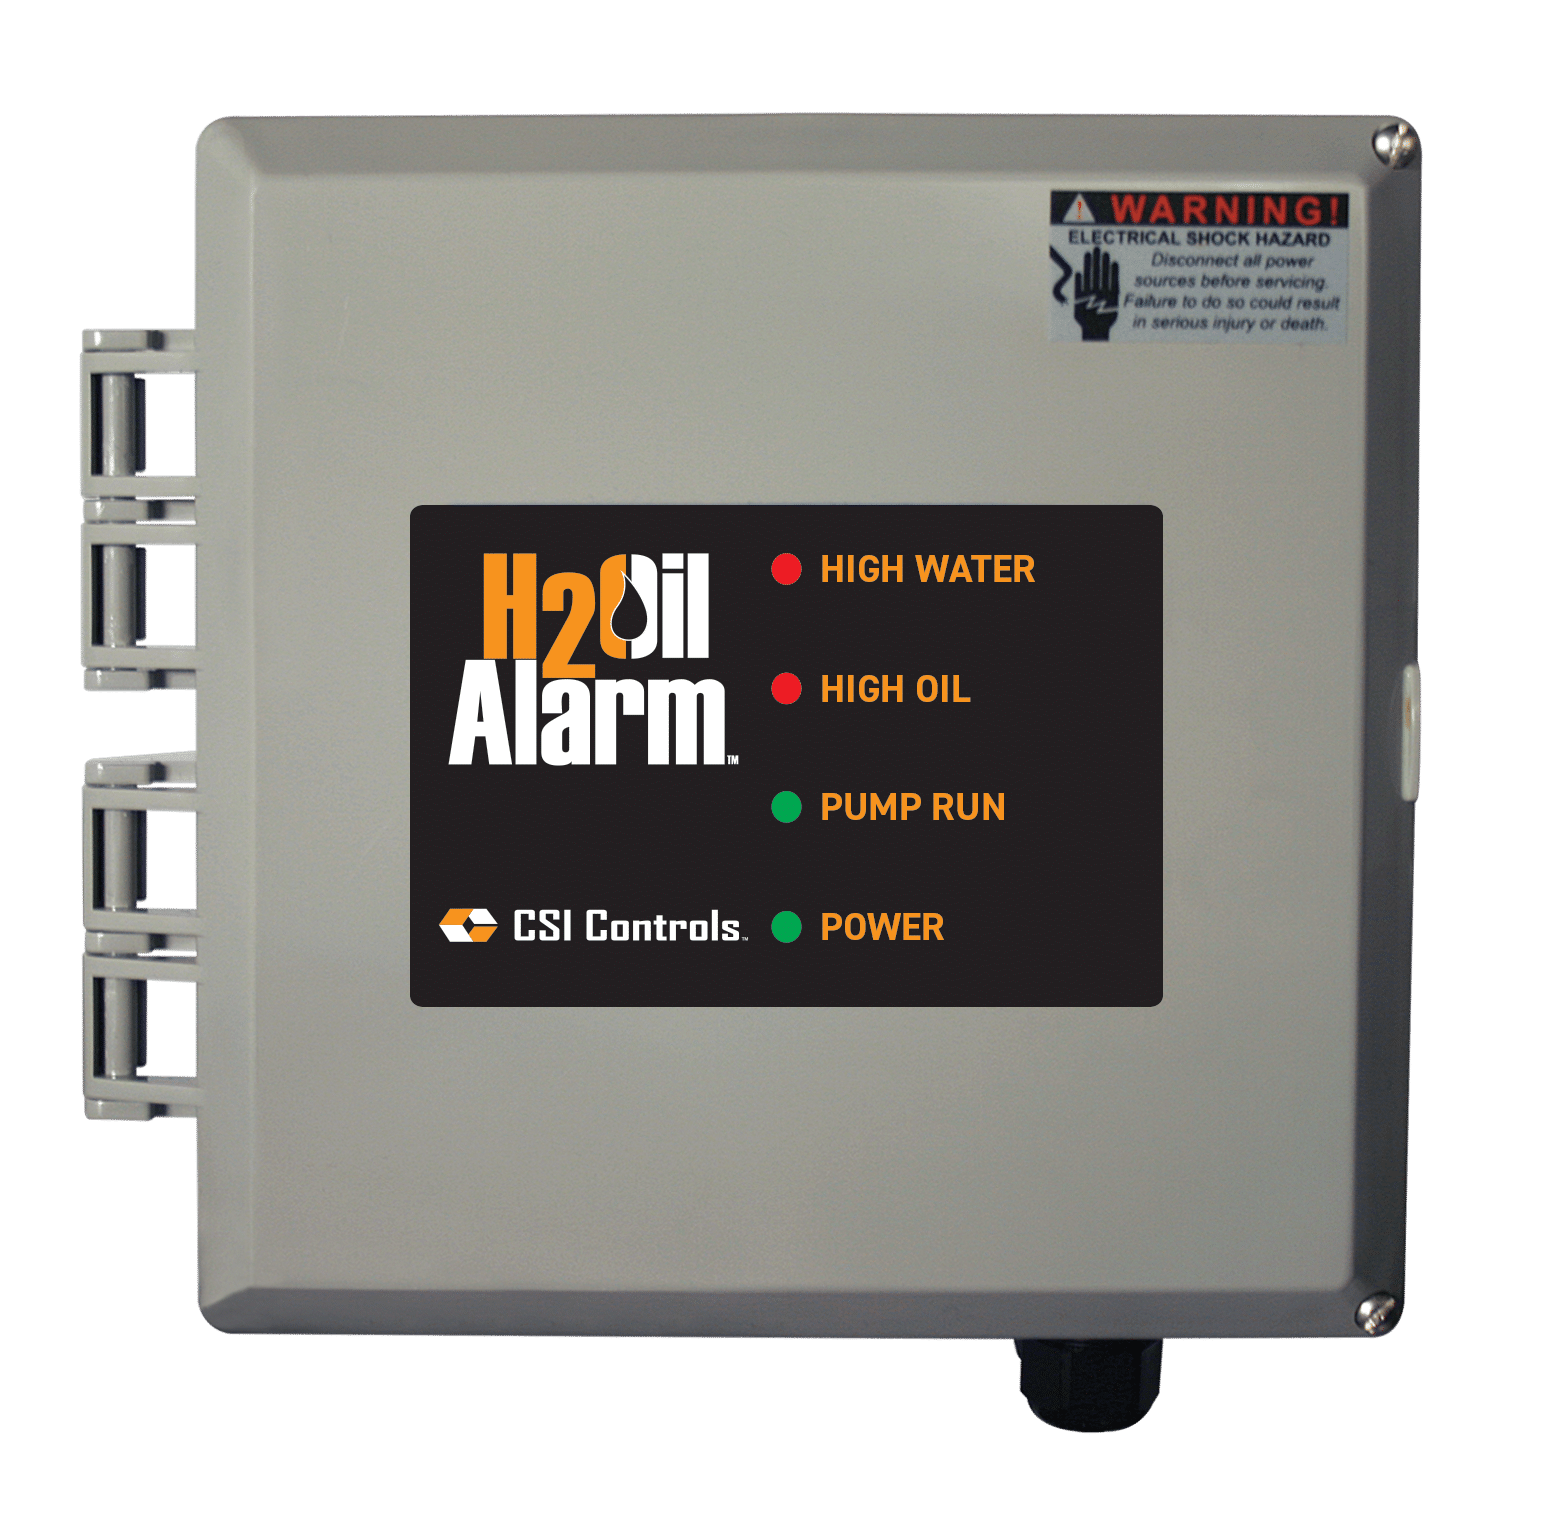 h2oil alarm